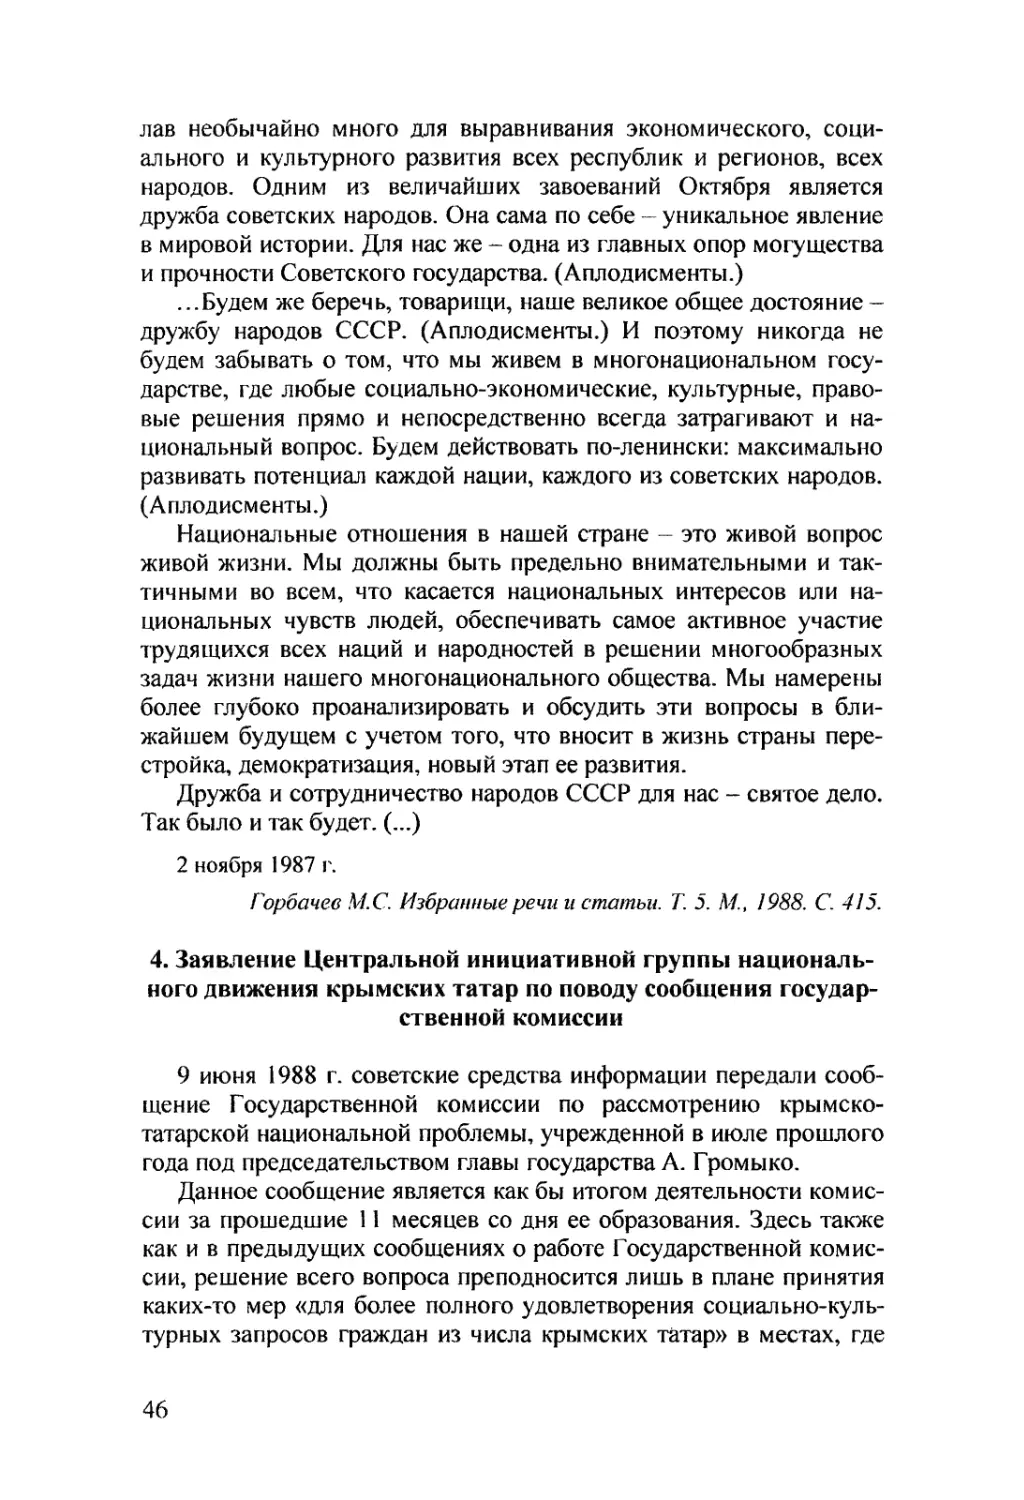 4. Заявление Центральной инициативной группы национального движения крымских татар по поводу сообщения государственной комиссии